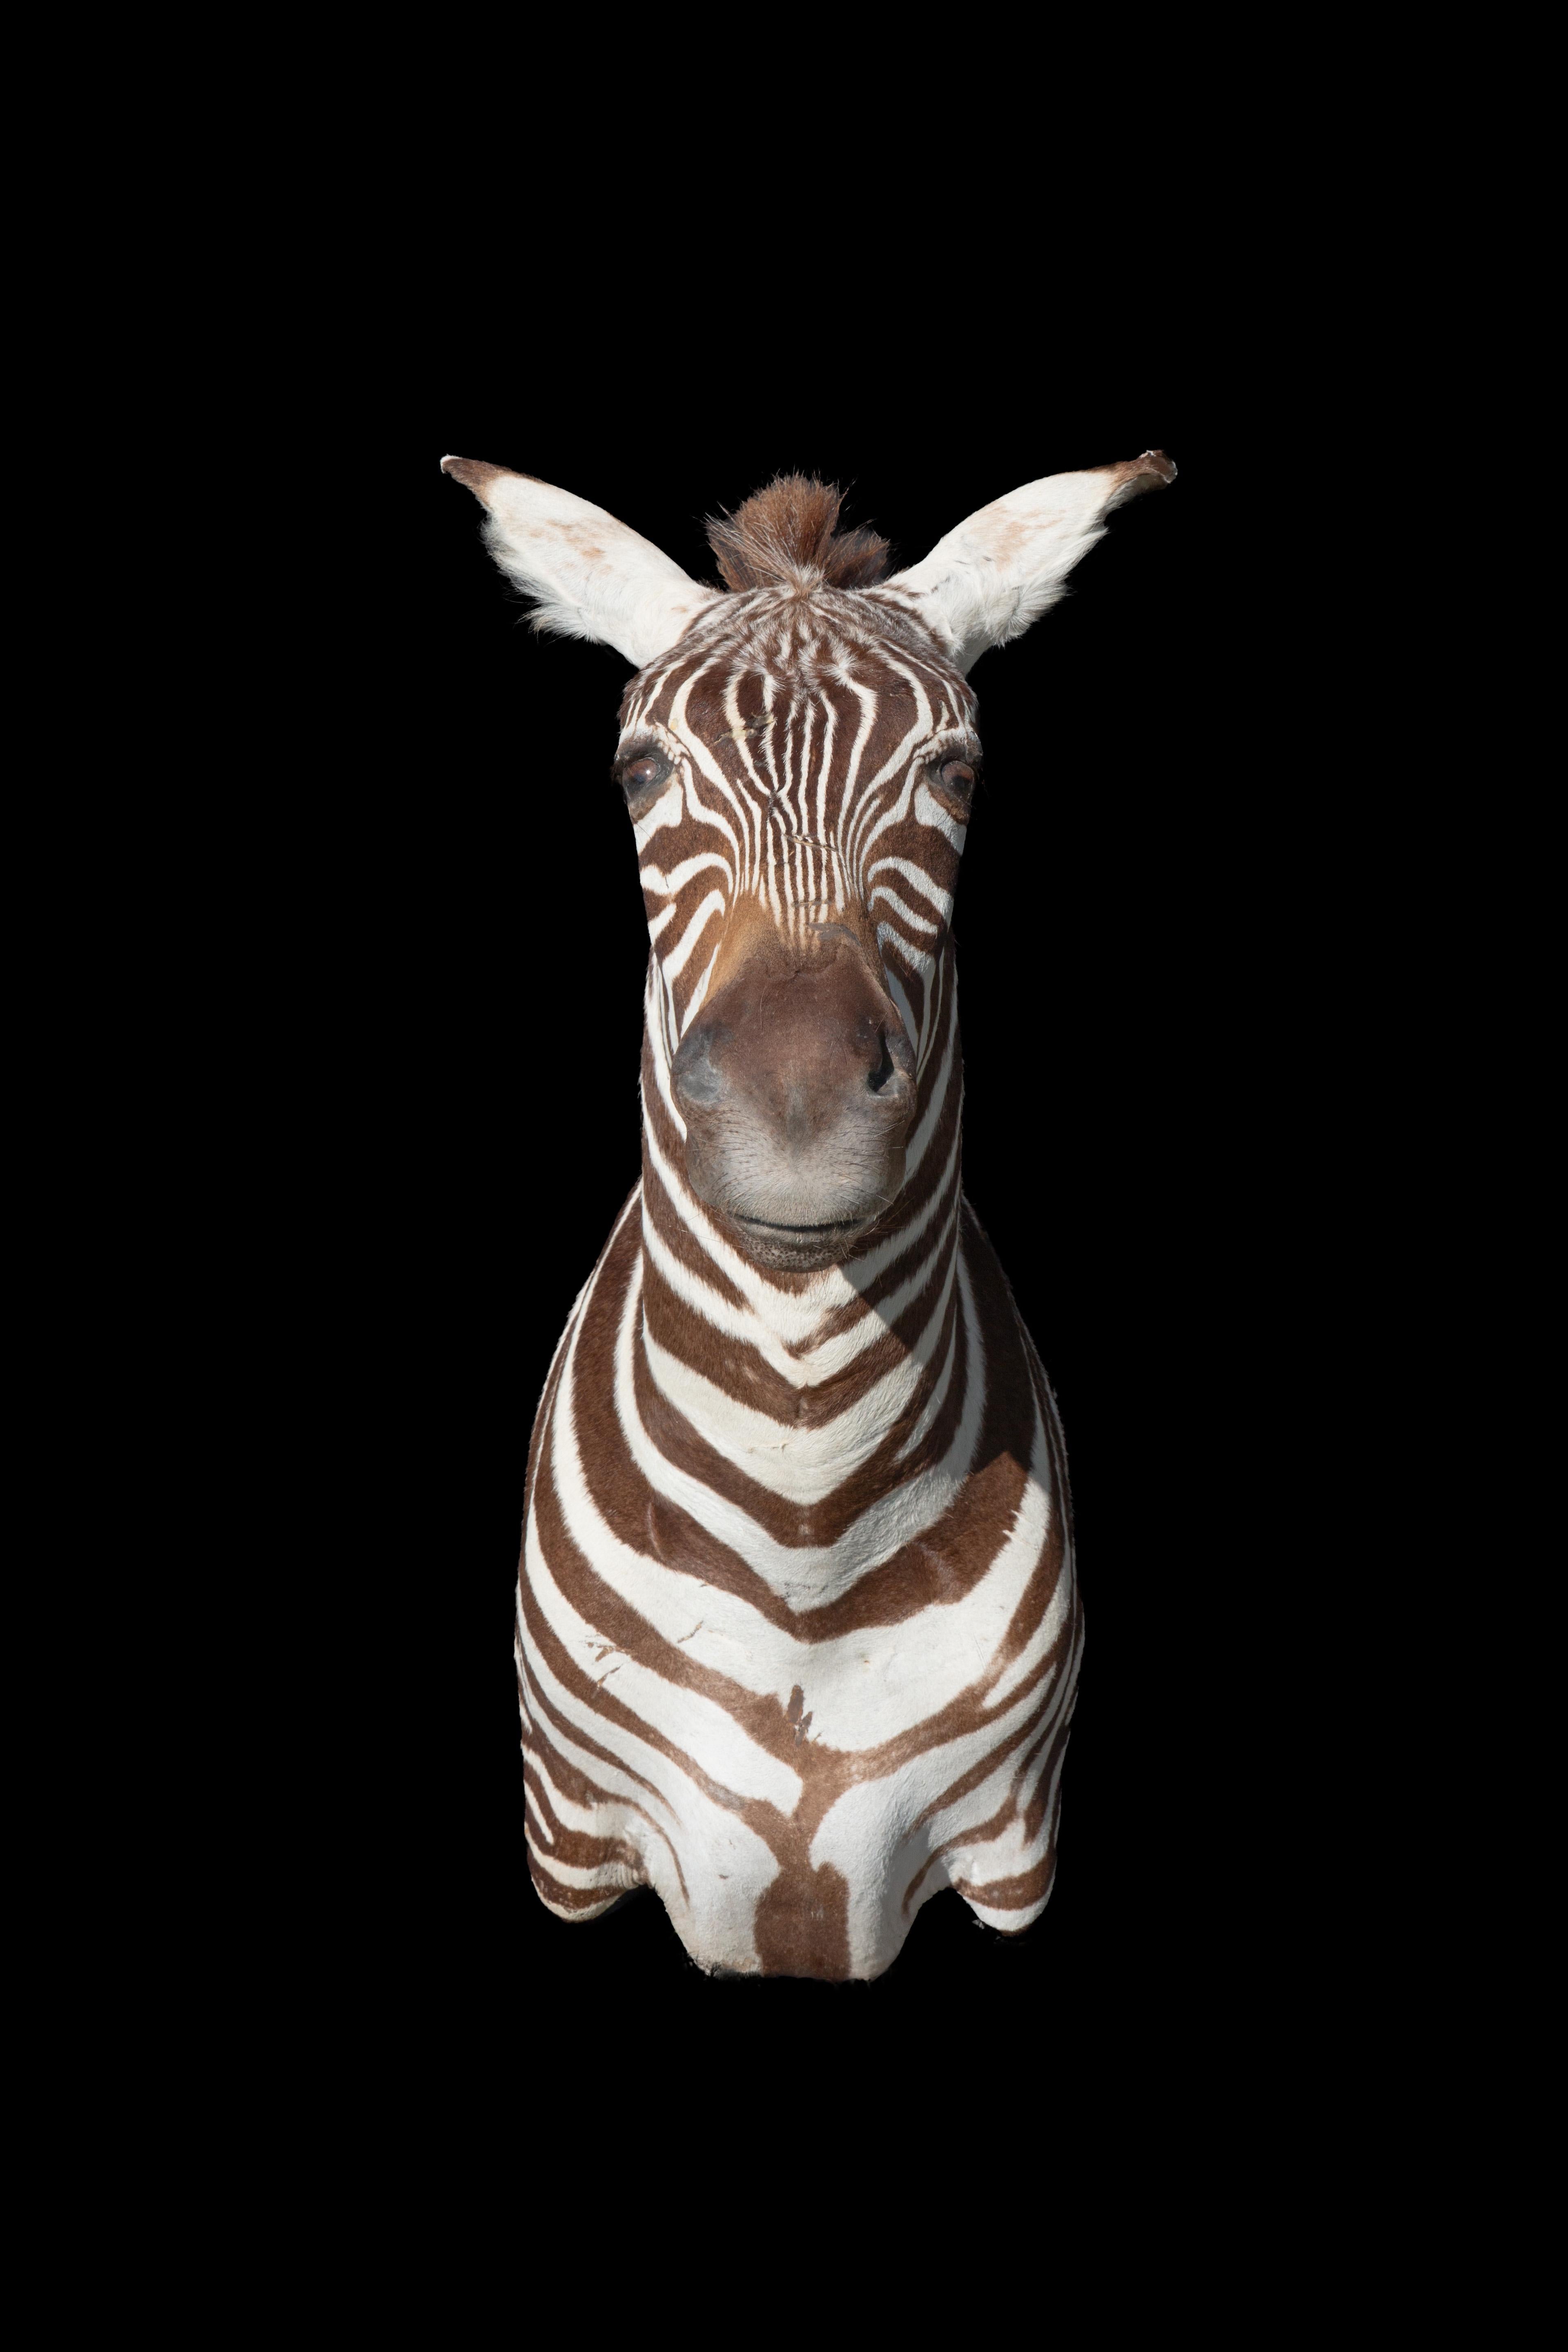 Erstklassige Schulterpräparate des Burchell-Zebra, einer südlichen Unterart des Steppenzebras, aus Südafrika. Dieses exquisite Kunstwerk misst 33